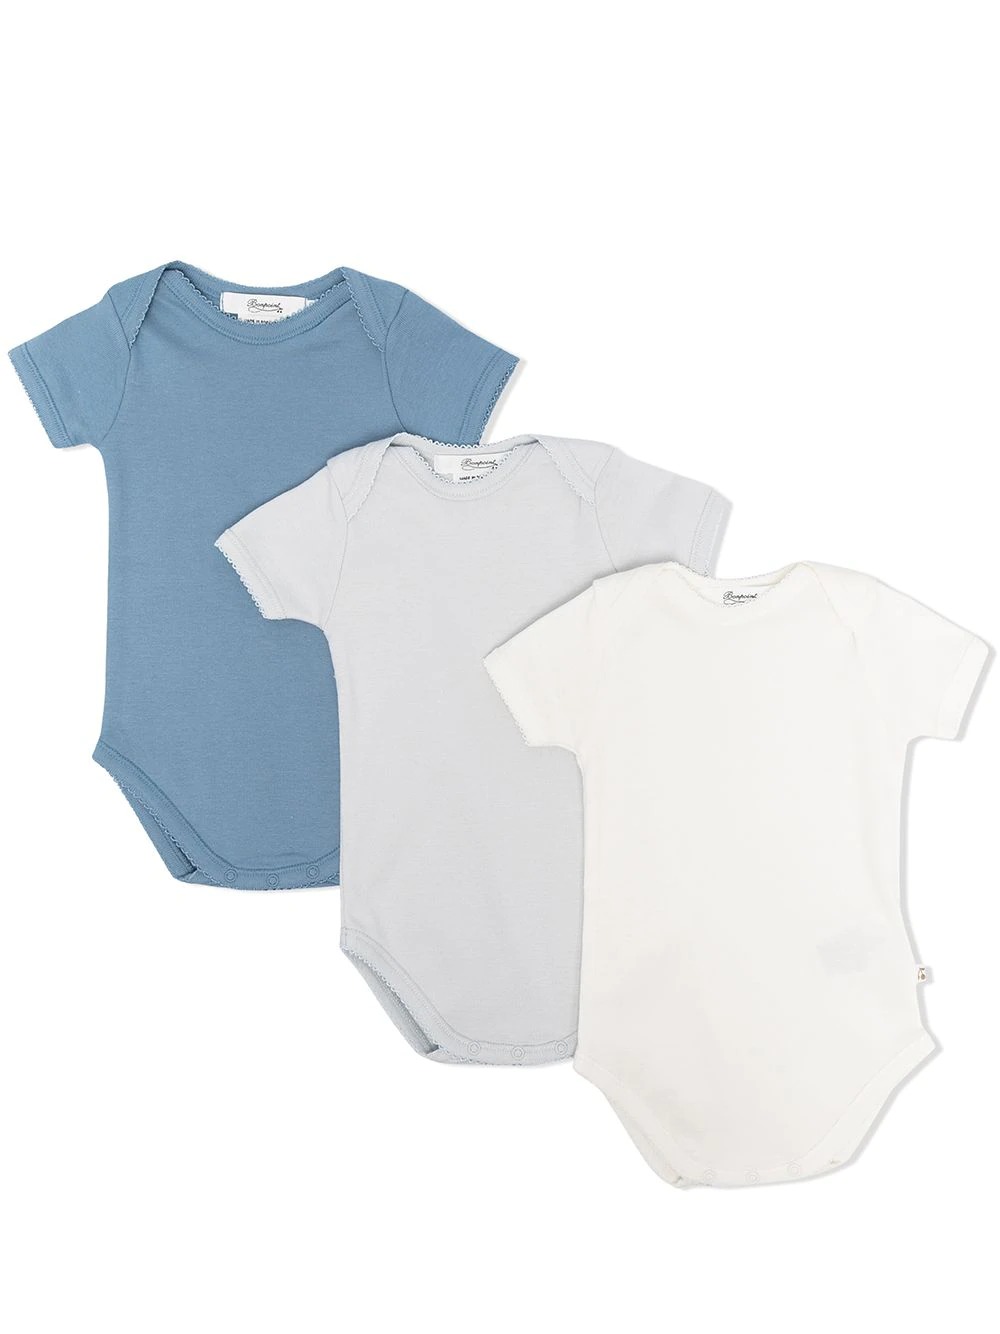 Pack 3 Body In Cotone Bianco e Azzurro BONPOINT | PEBTIBODYS3110